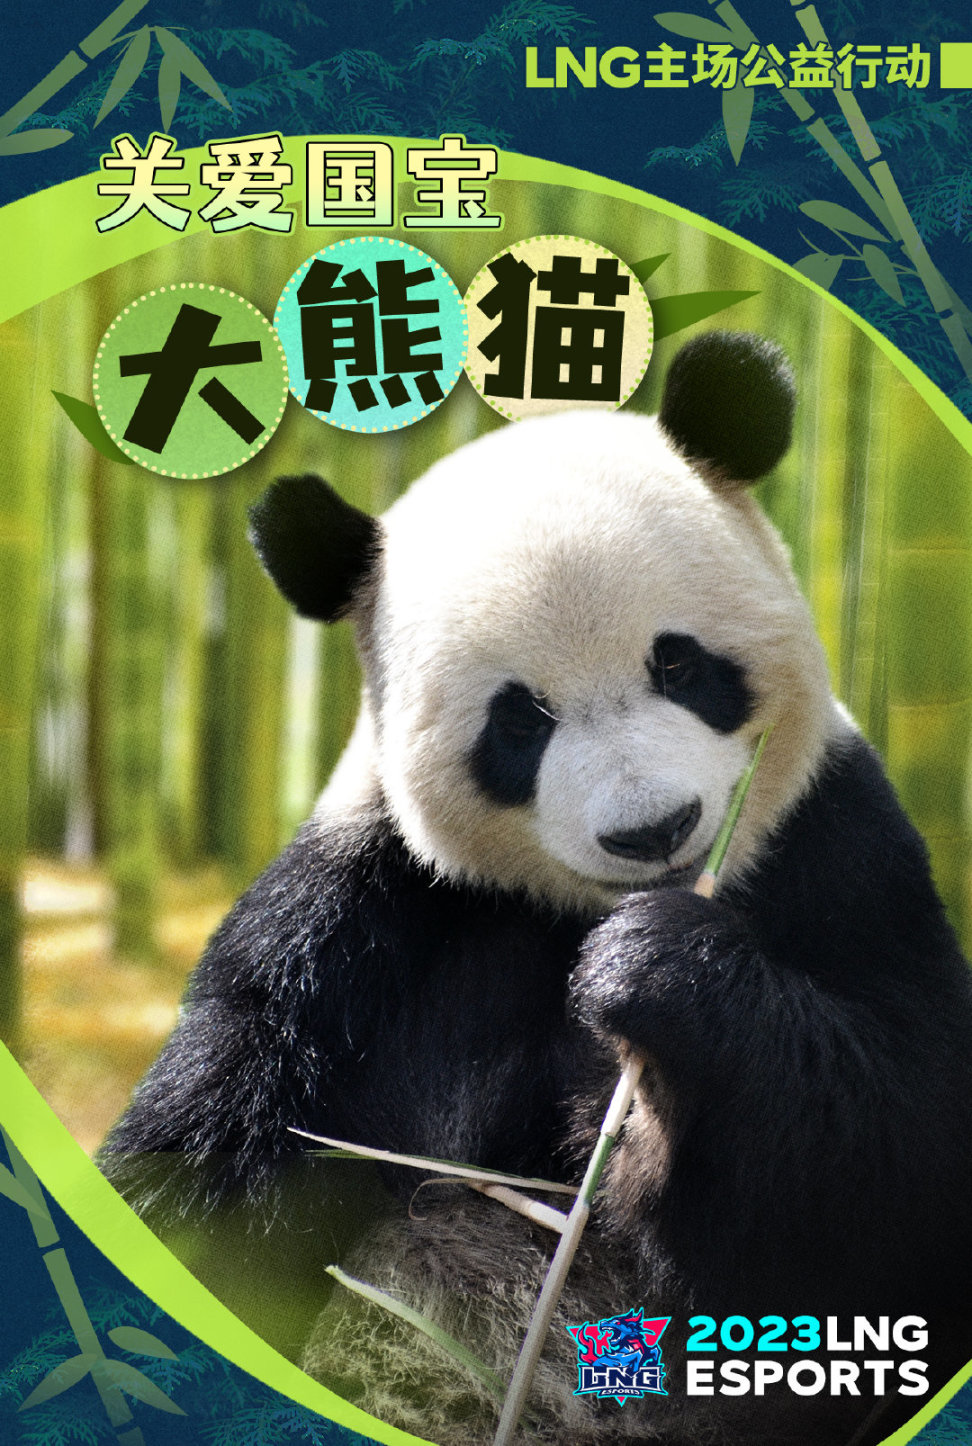 【英雄聯盟】聯盟日報:明日LNG門票收益捐贈大熊貓中心;UP無緣季後賽-第4張